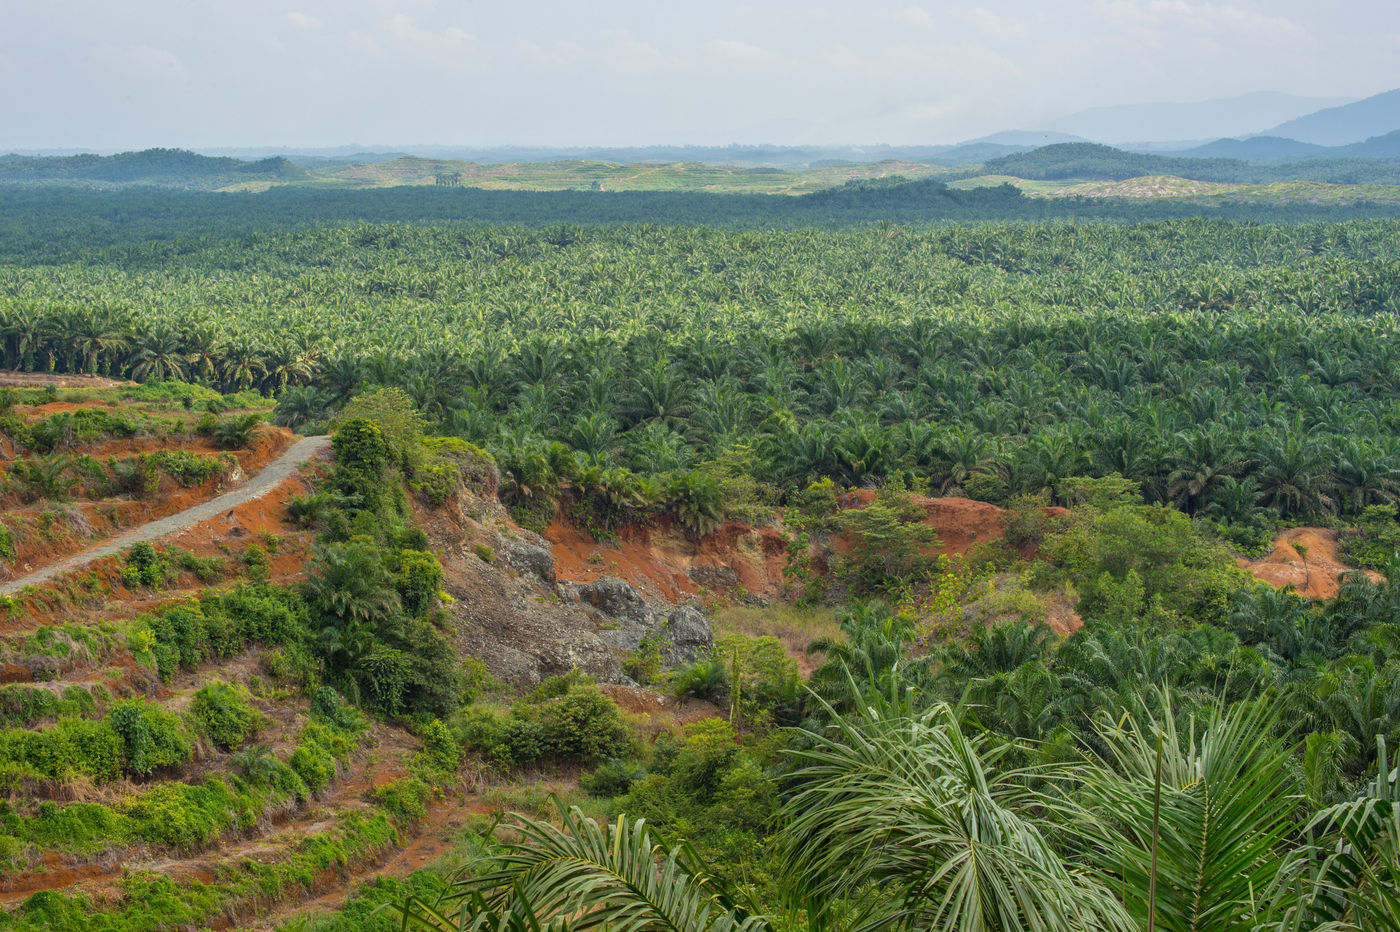 Palmplantages zijn helaas de voornaamste reden waarom het ongerepte landschap van Borneo ten onder gaat. © Billy Herman